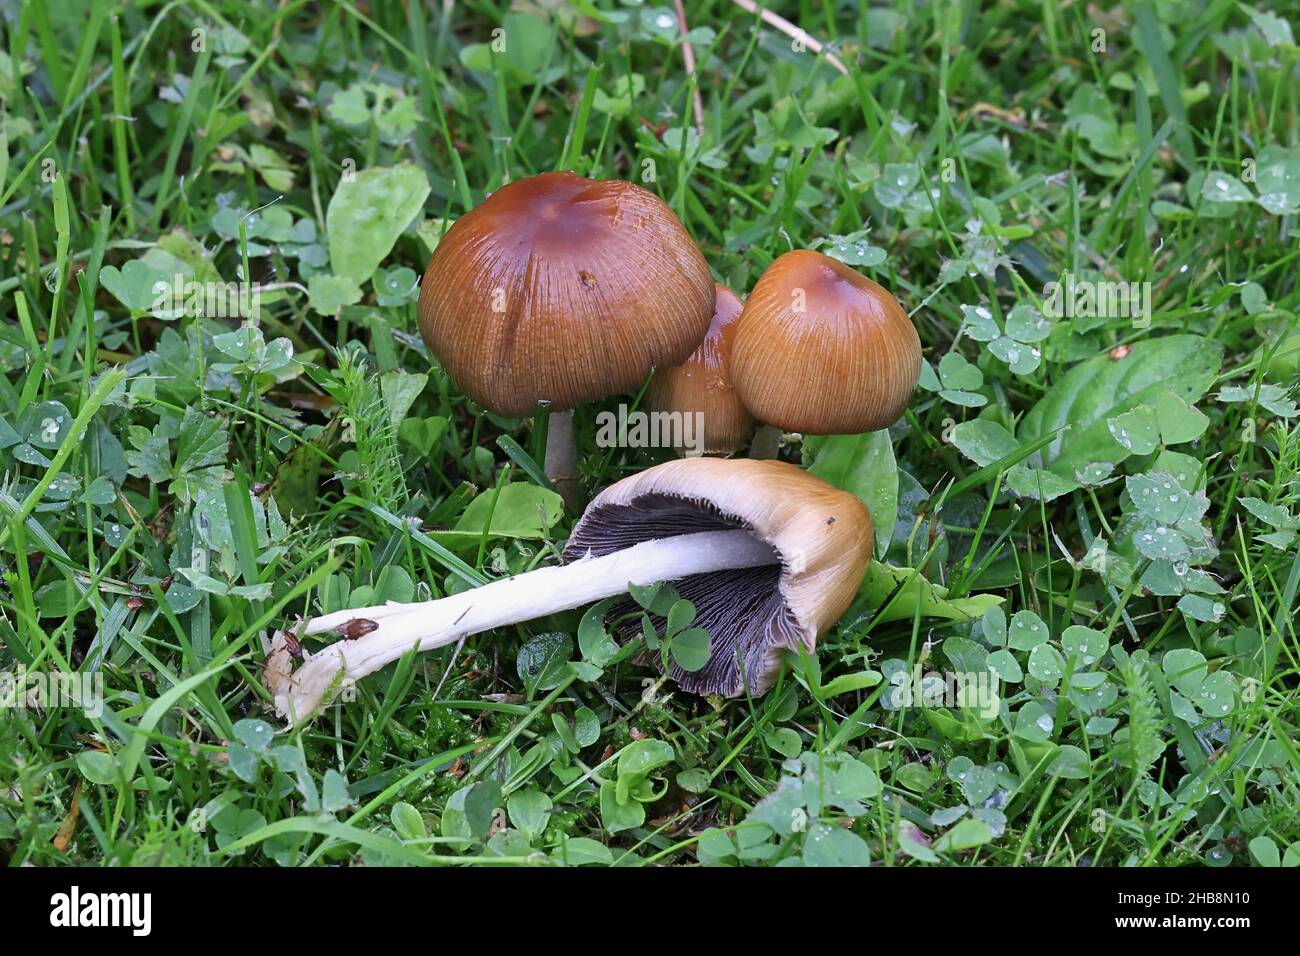 Coprinellus micaceus, también llamado Coprinus micaceus, comúnmente conocido como glistering Inkcap, hongo silvestre de Finlandia Foto de stock